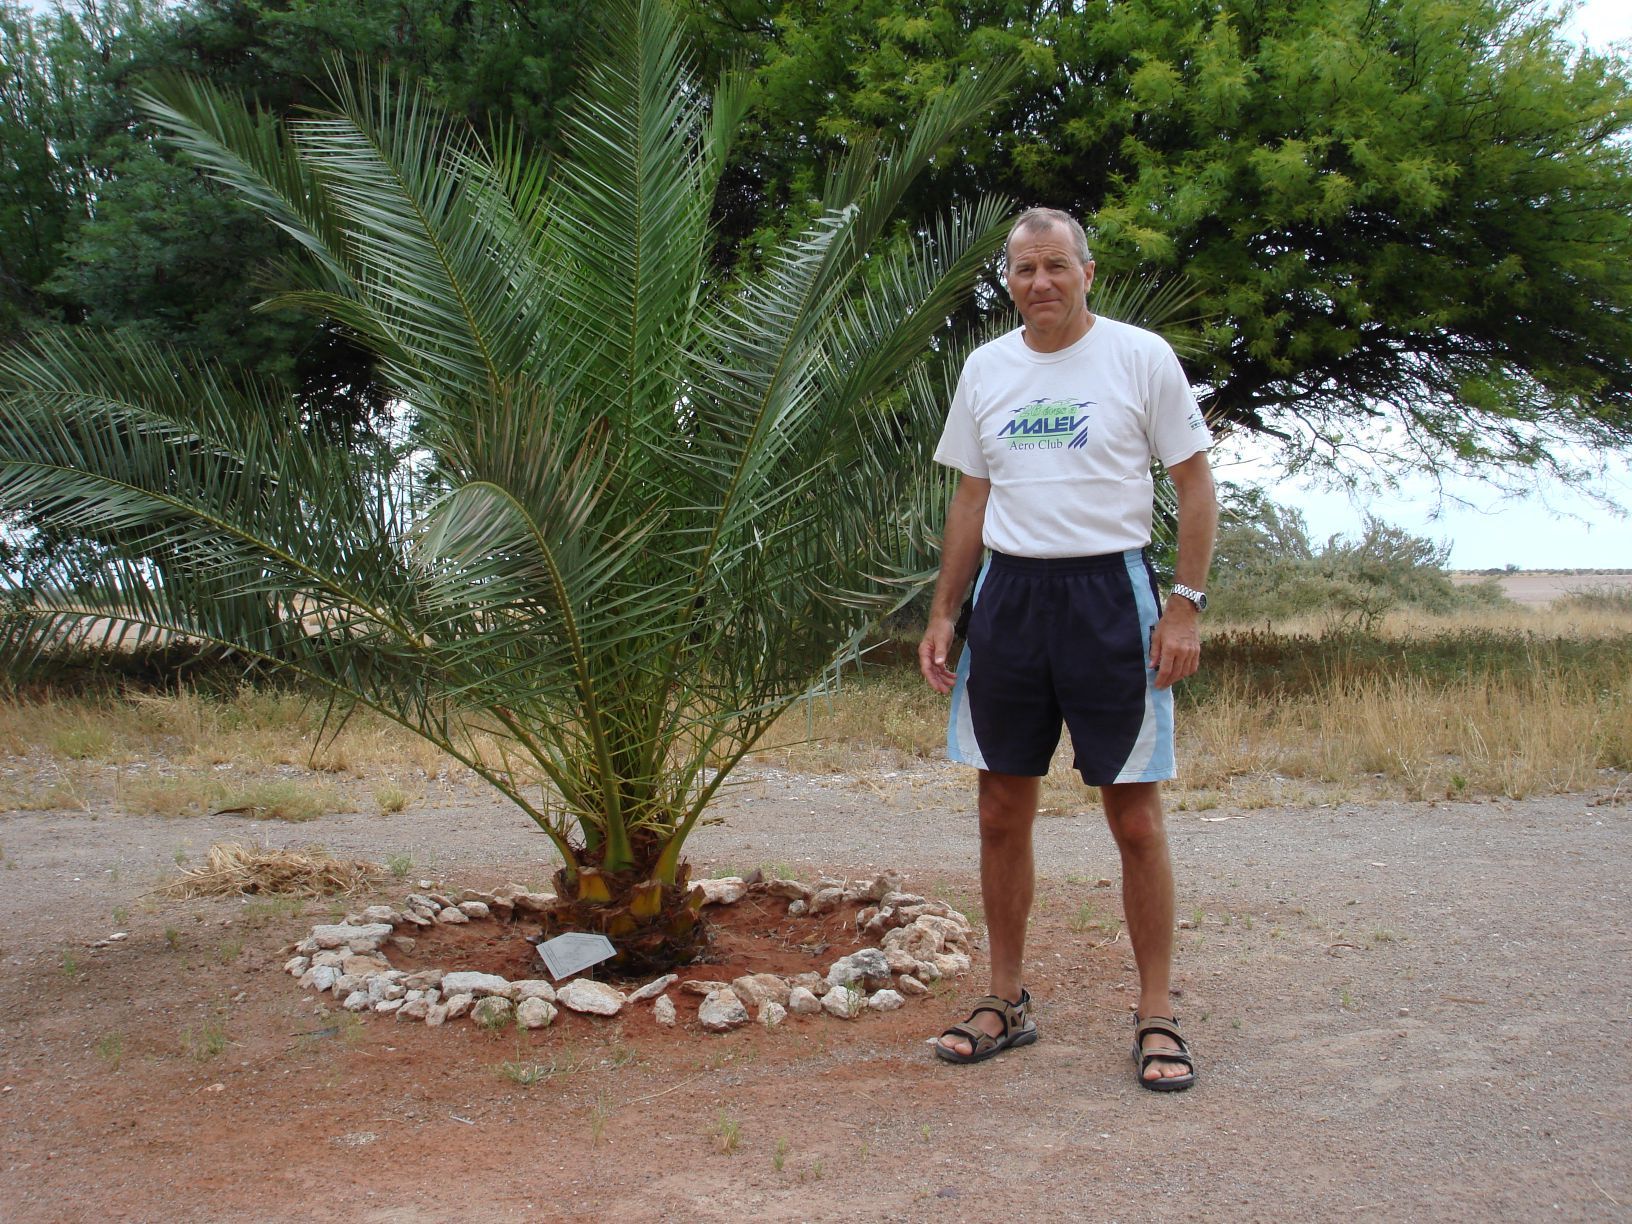 Hegedűs László, alias Bagoly, a világrekordja tiszteletére ültetett pálmával Namíbiában